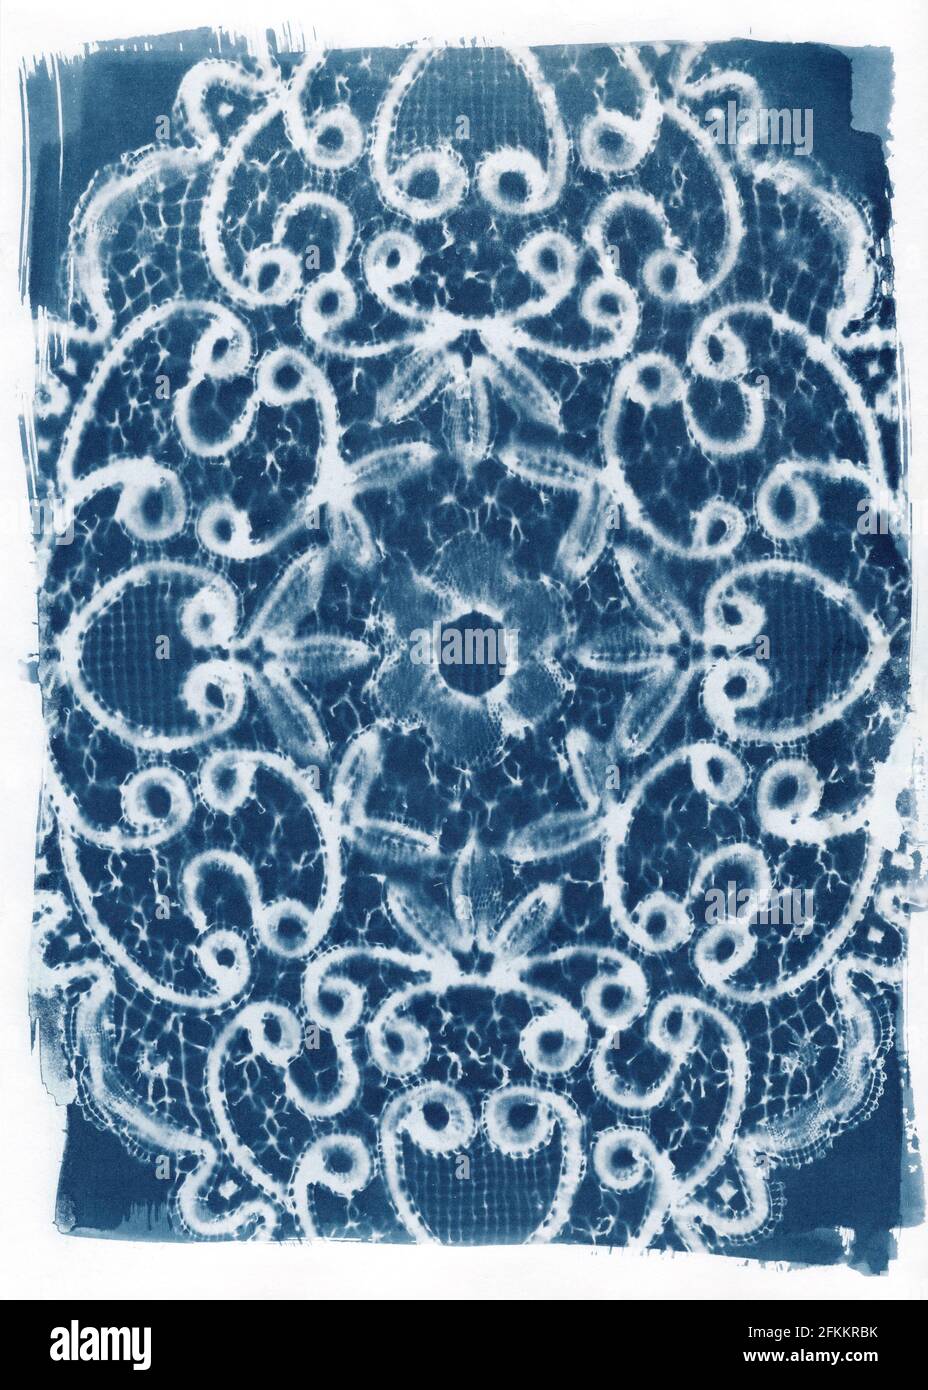 Le cyanotype moderne imprime des images à l'aide de dentelle dolily Banque D'Images